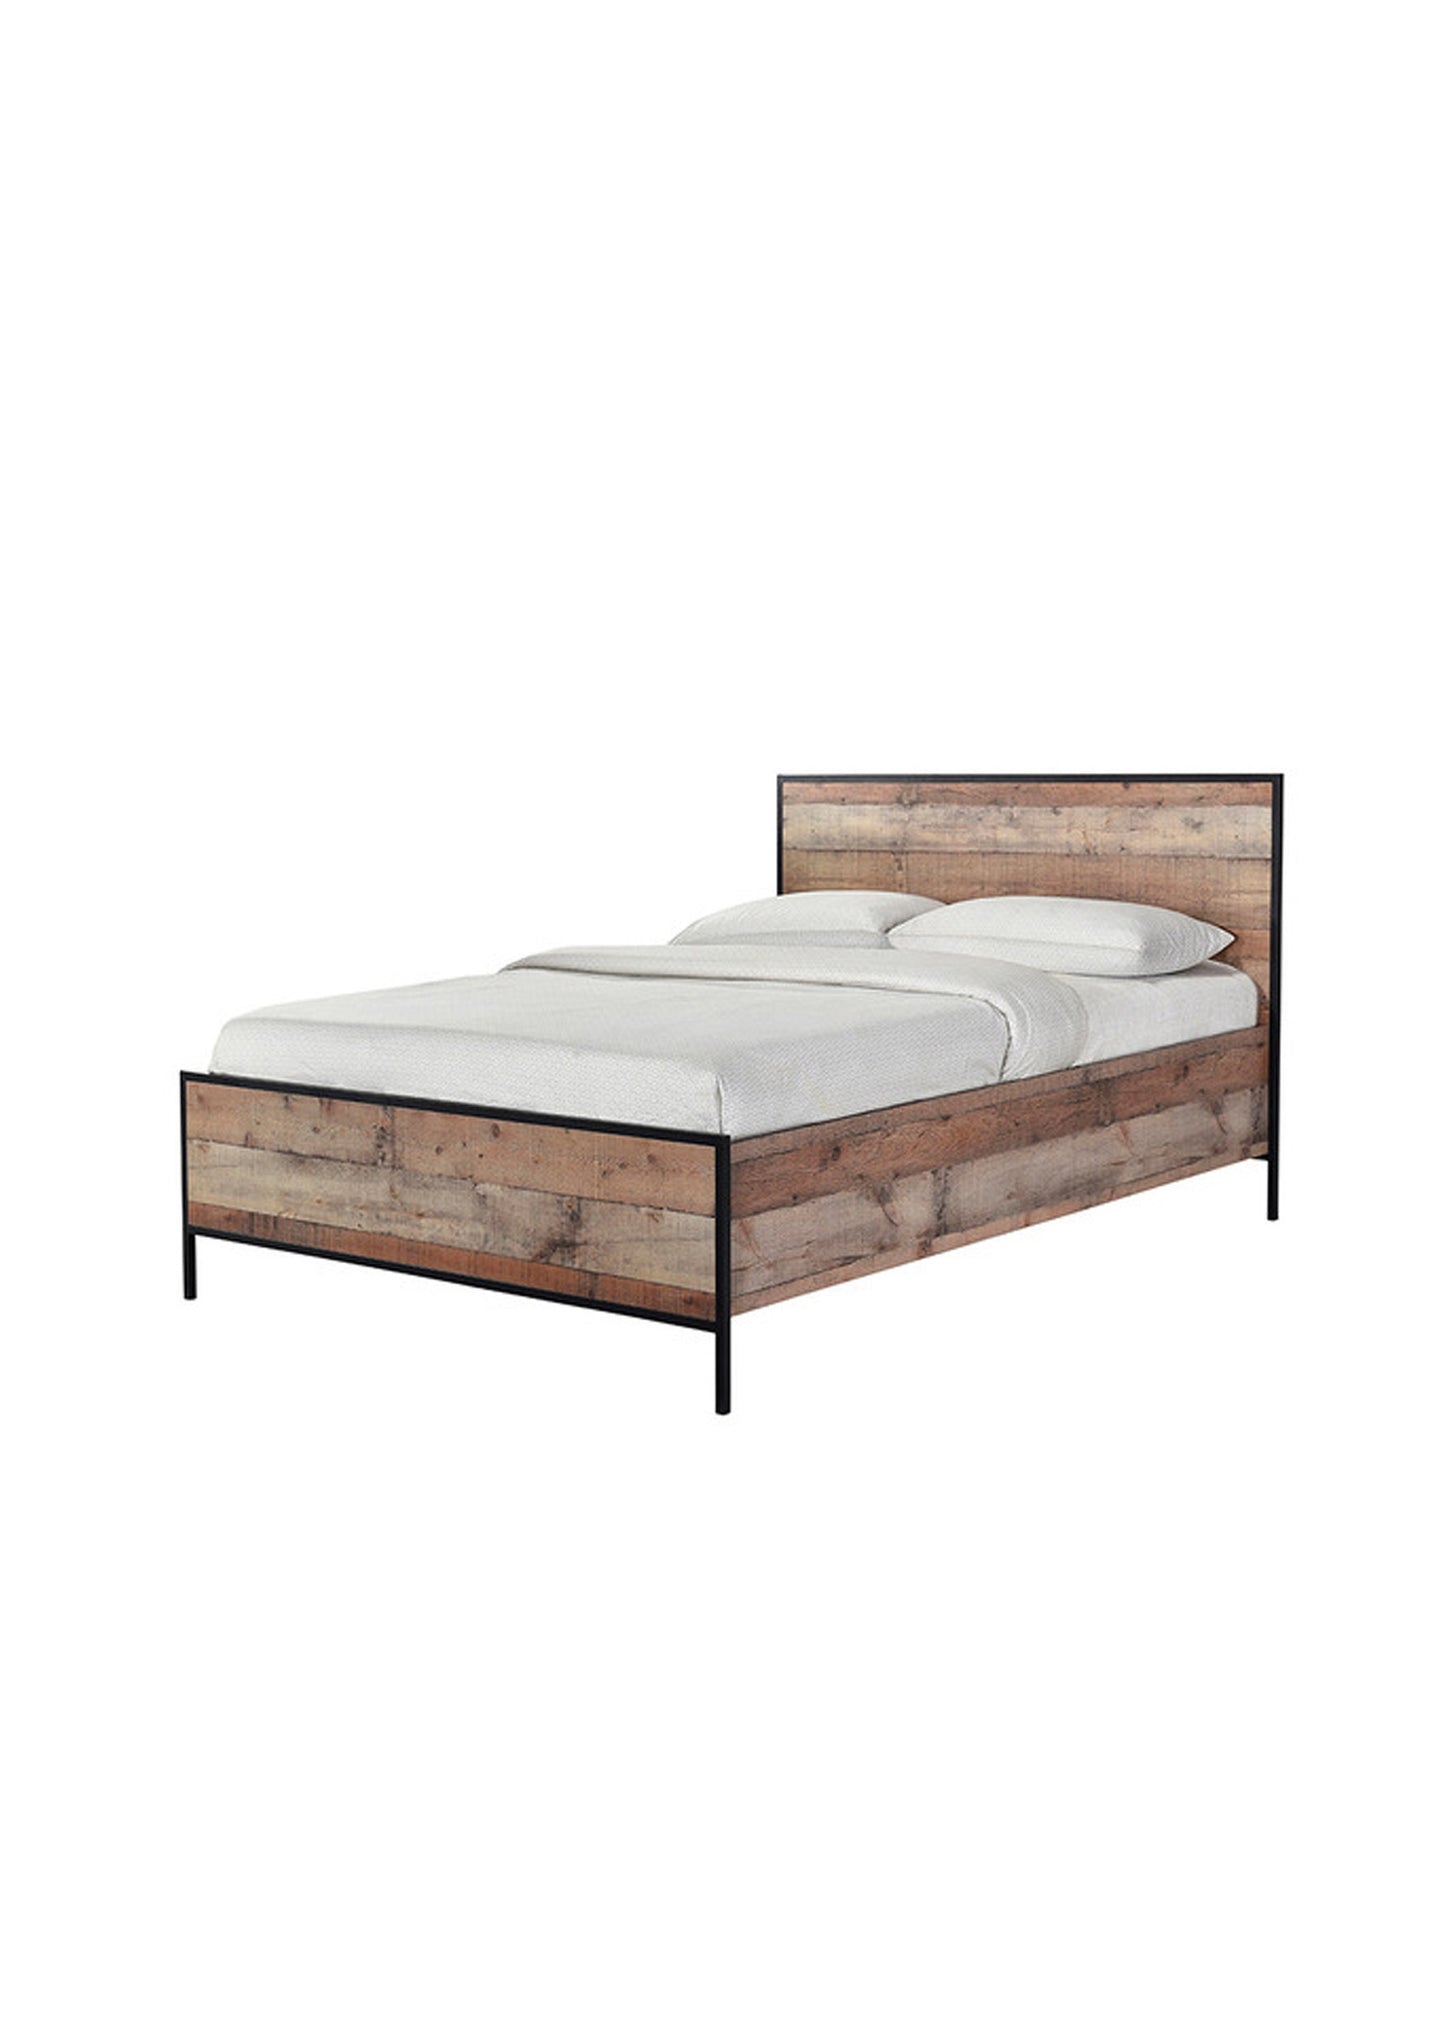 Industrial wood effect double bed frame  Oak Effect